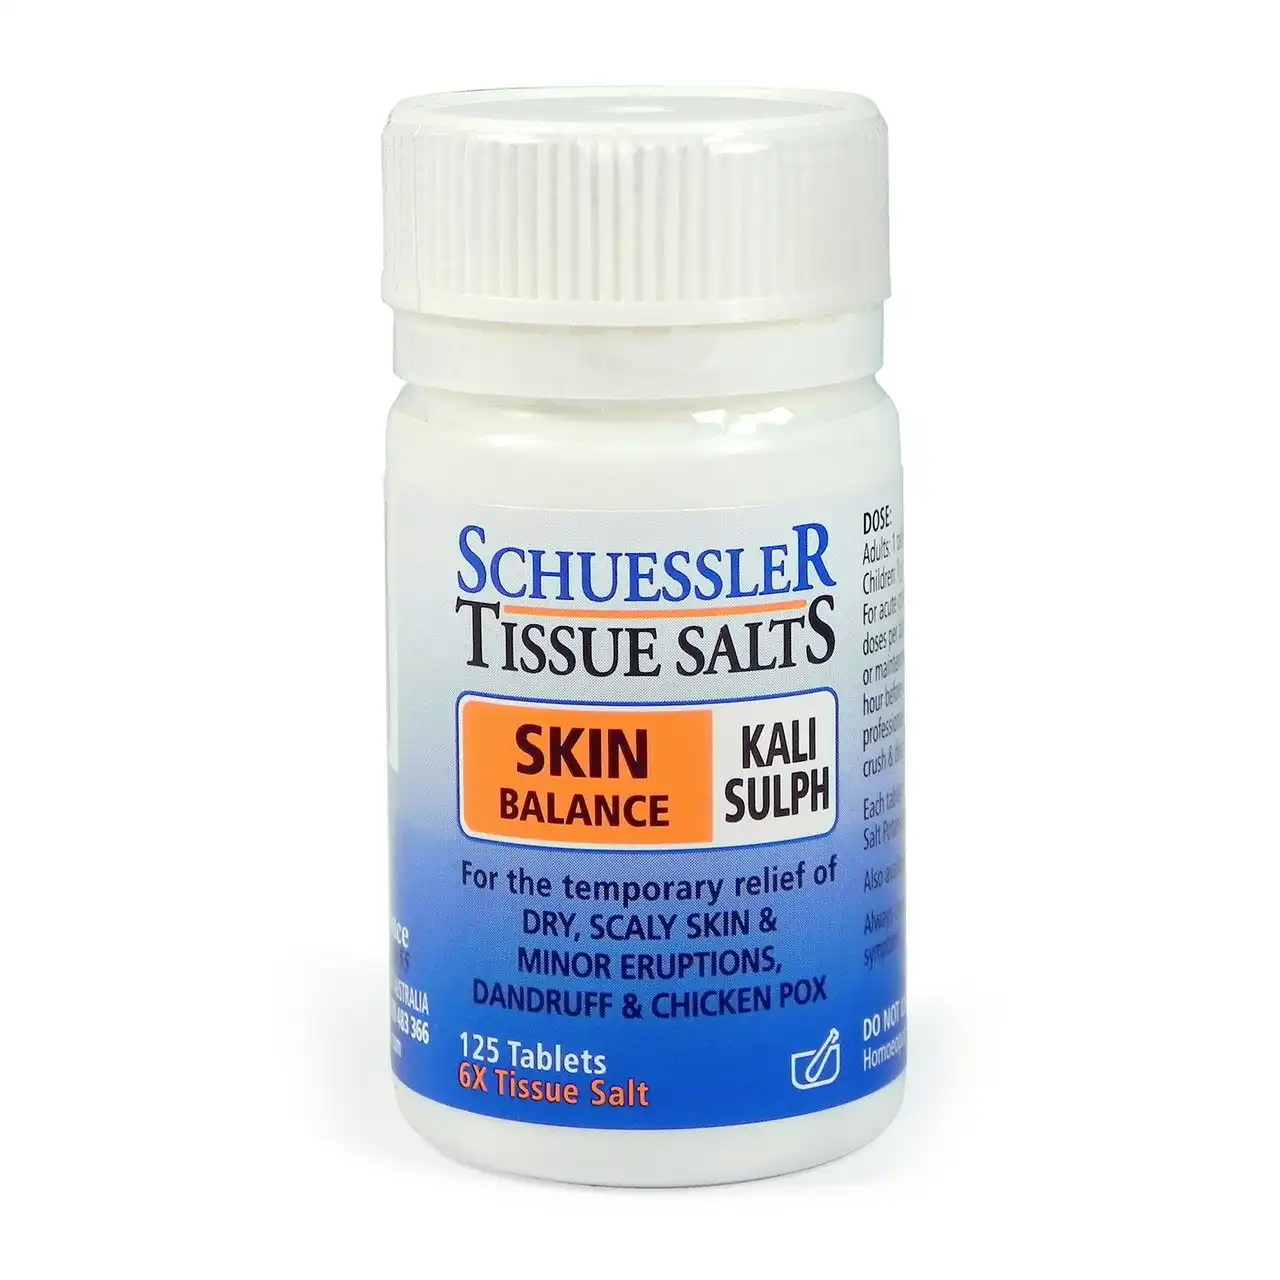 Schuessler Tissue Salts Skin Balance Kali Sulph 125 Tablets